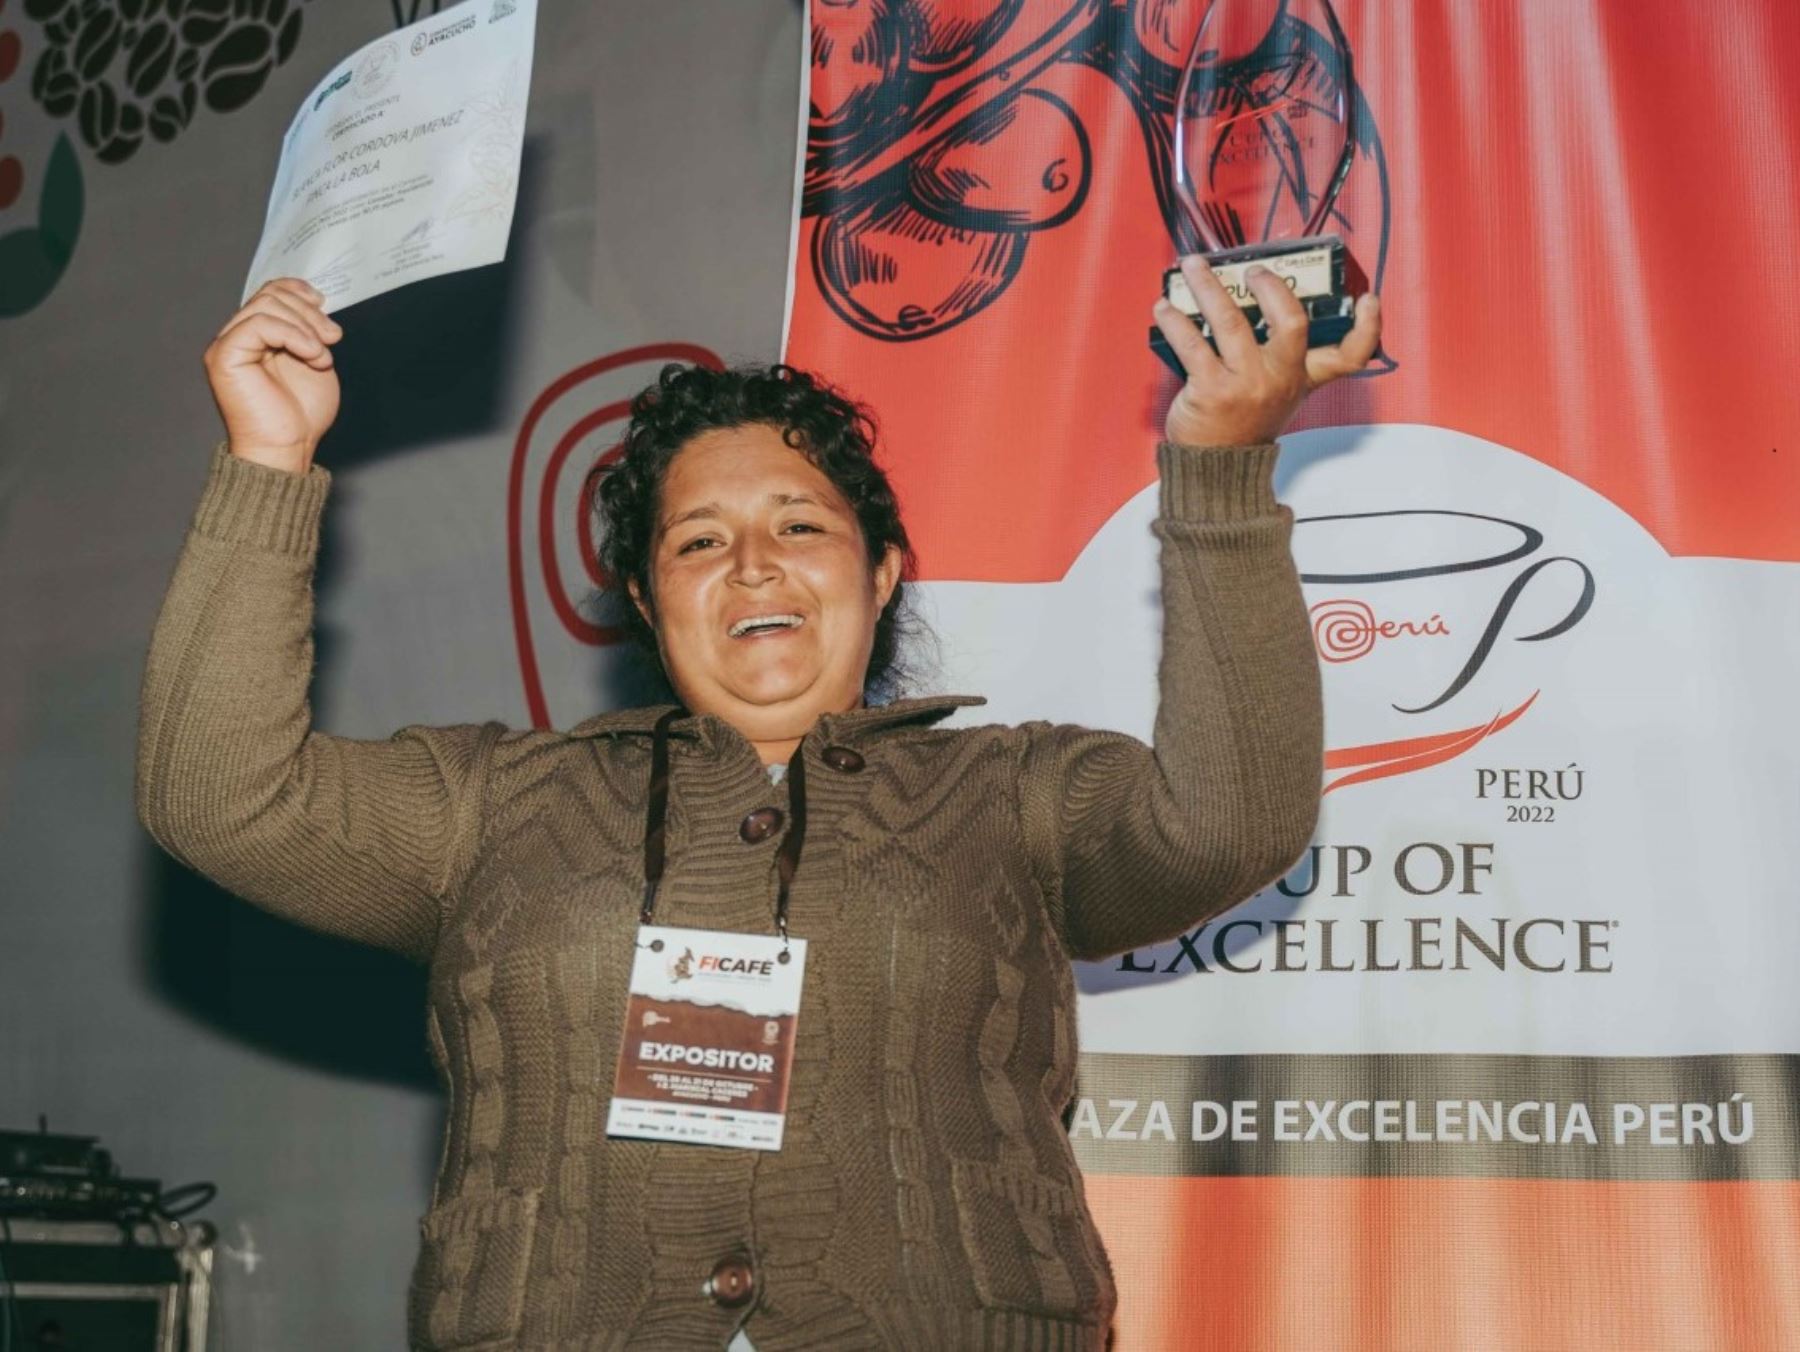 El concurso Taza de Excelencia 2022 eligió a Blanca Flor Córdova Jiménez como la caficultora con el mejor café del país,. Ella es productora de la provincia de San Ignacio, región Cajamarca. ANDINA/Difusión